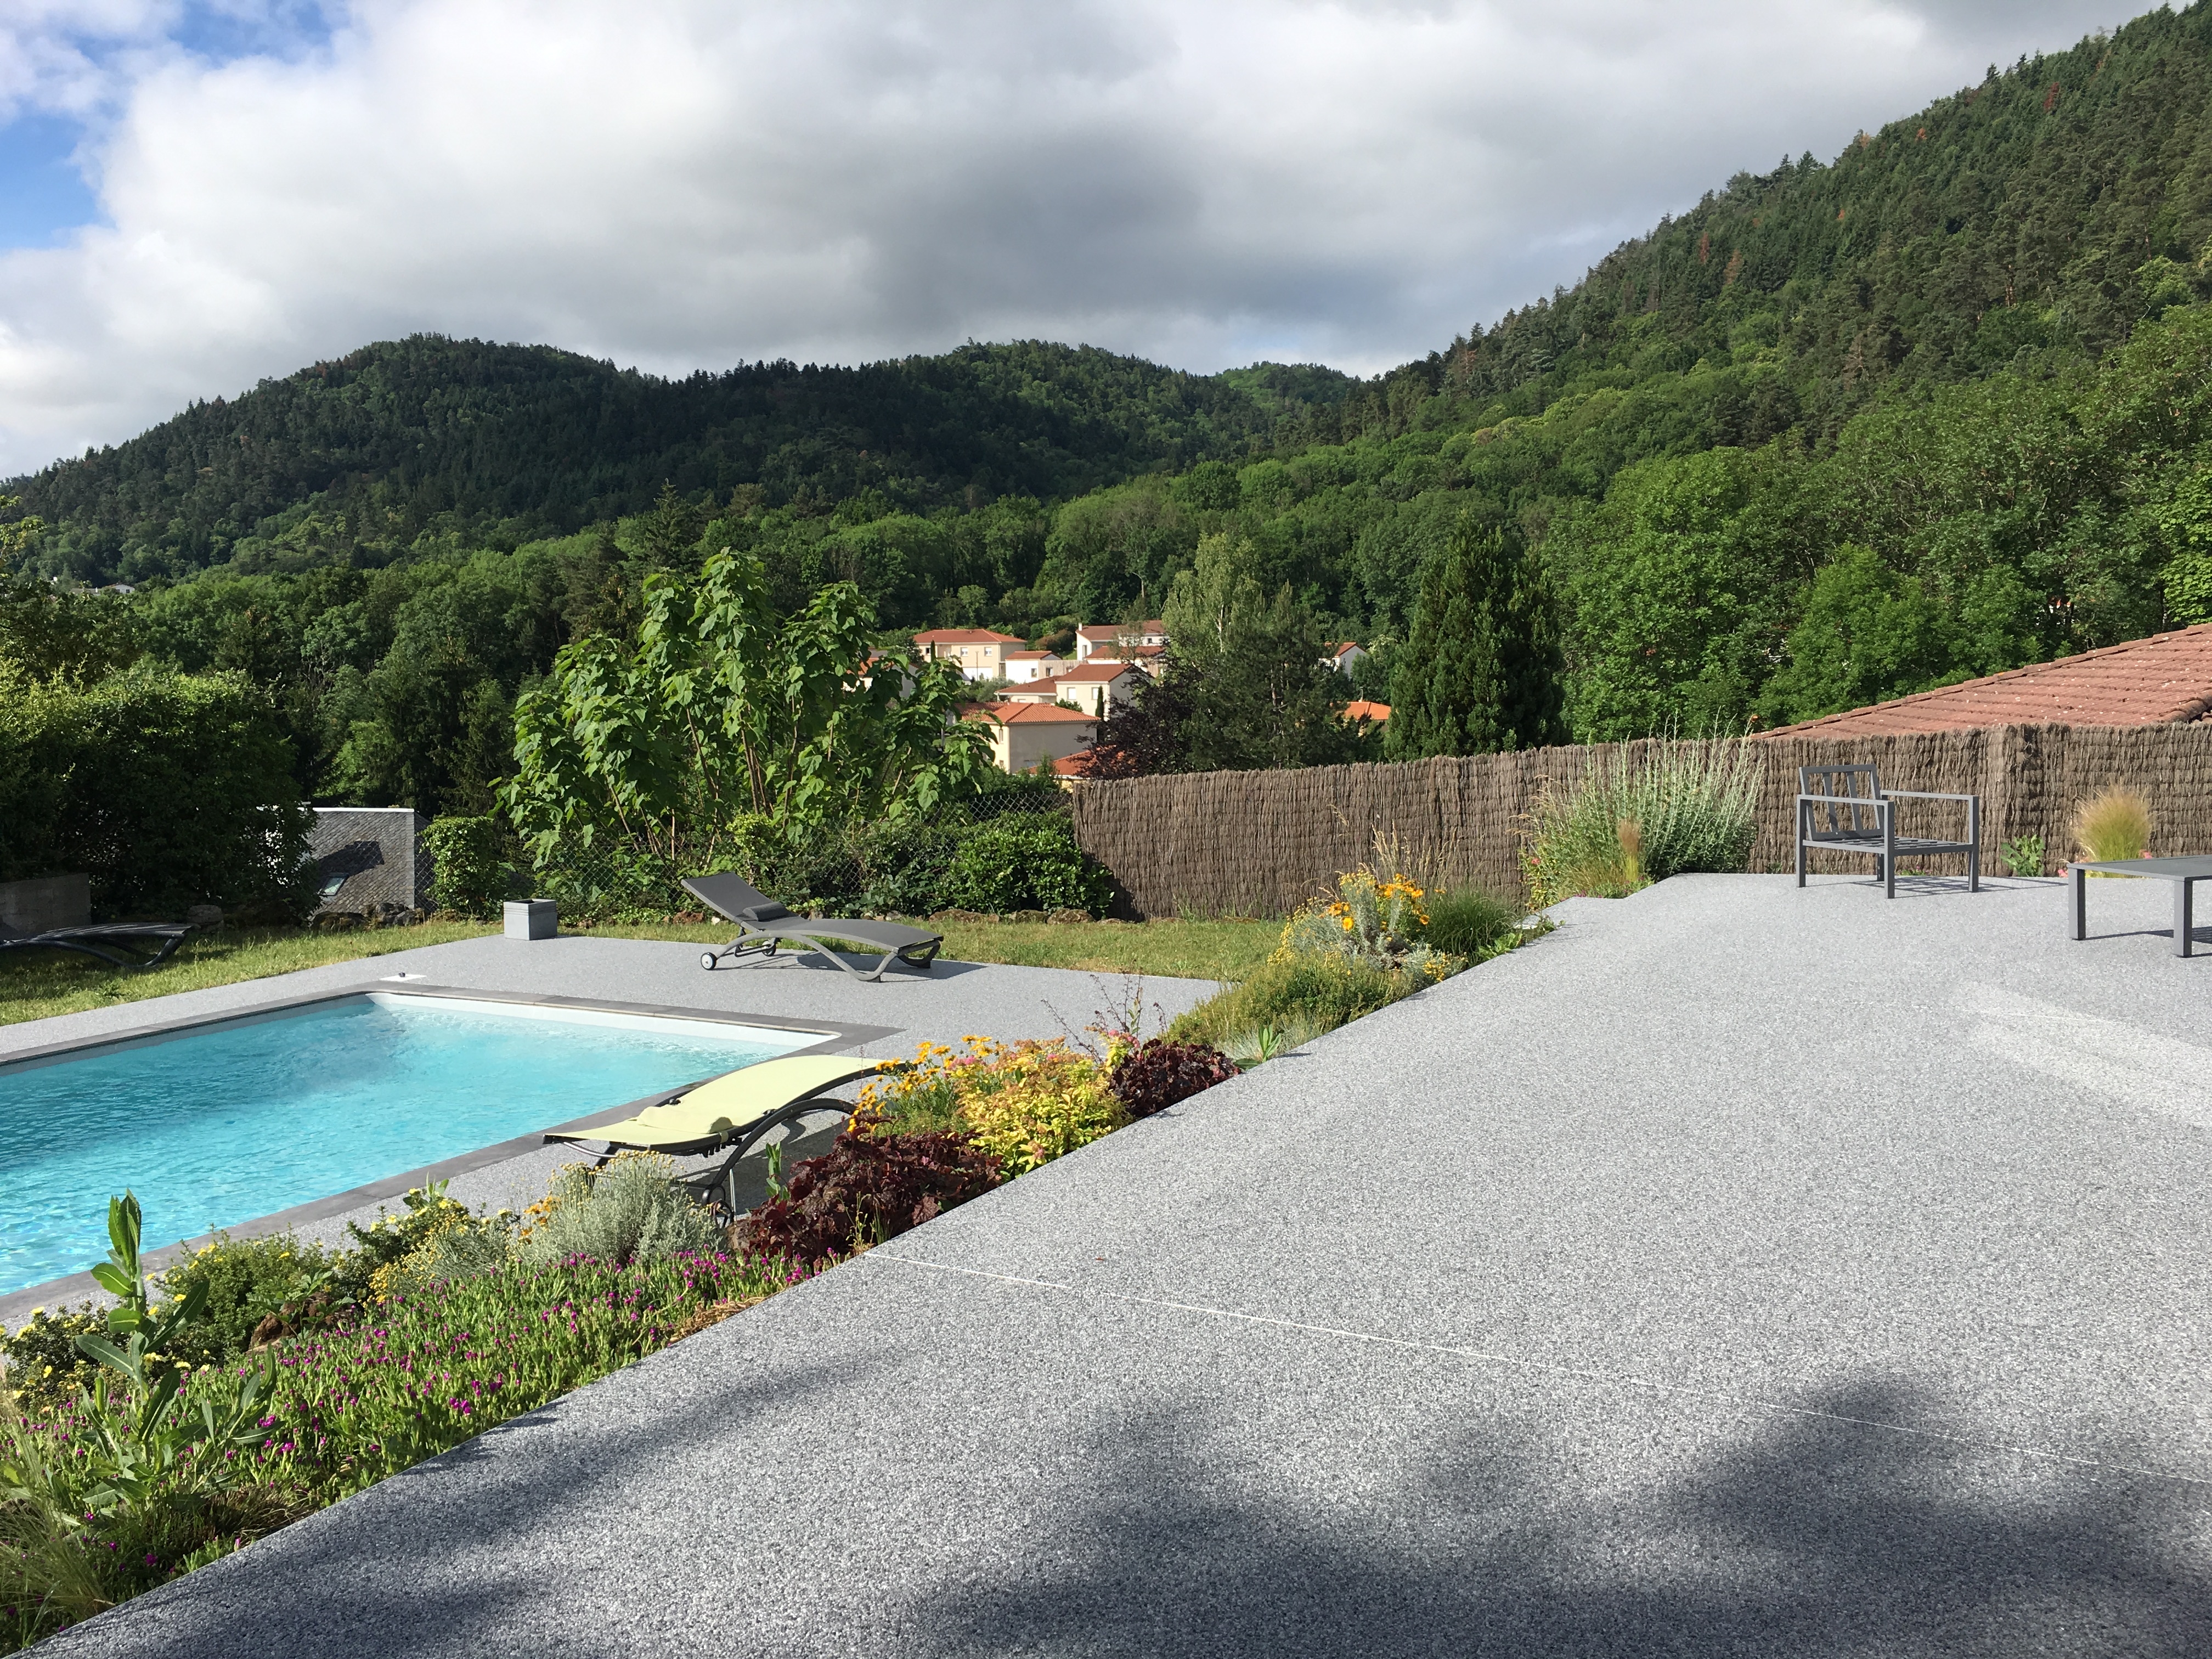 Ralisation Plage de piscine en Hydrostar et dallage - Puy-de-Dme cre le 25/07/2019